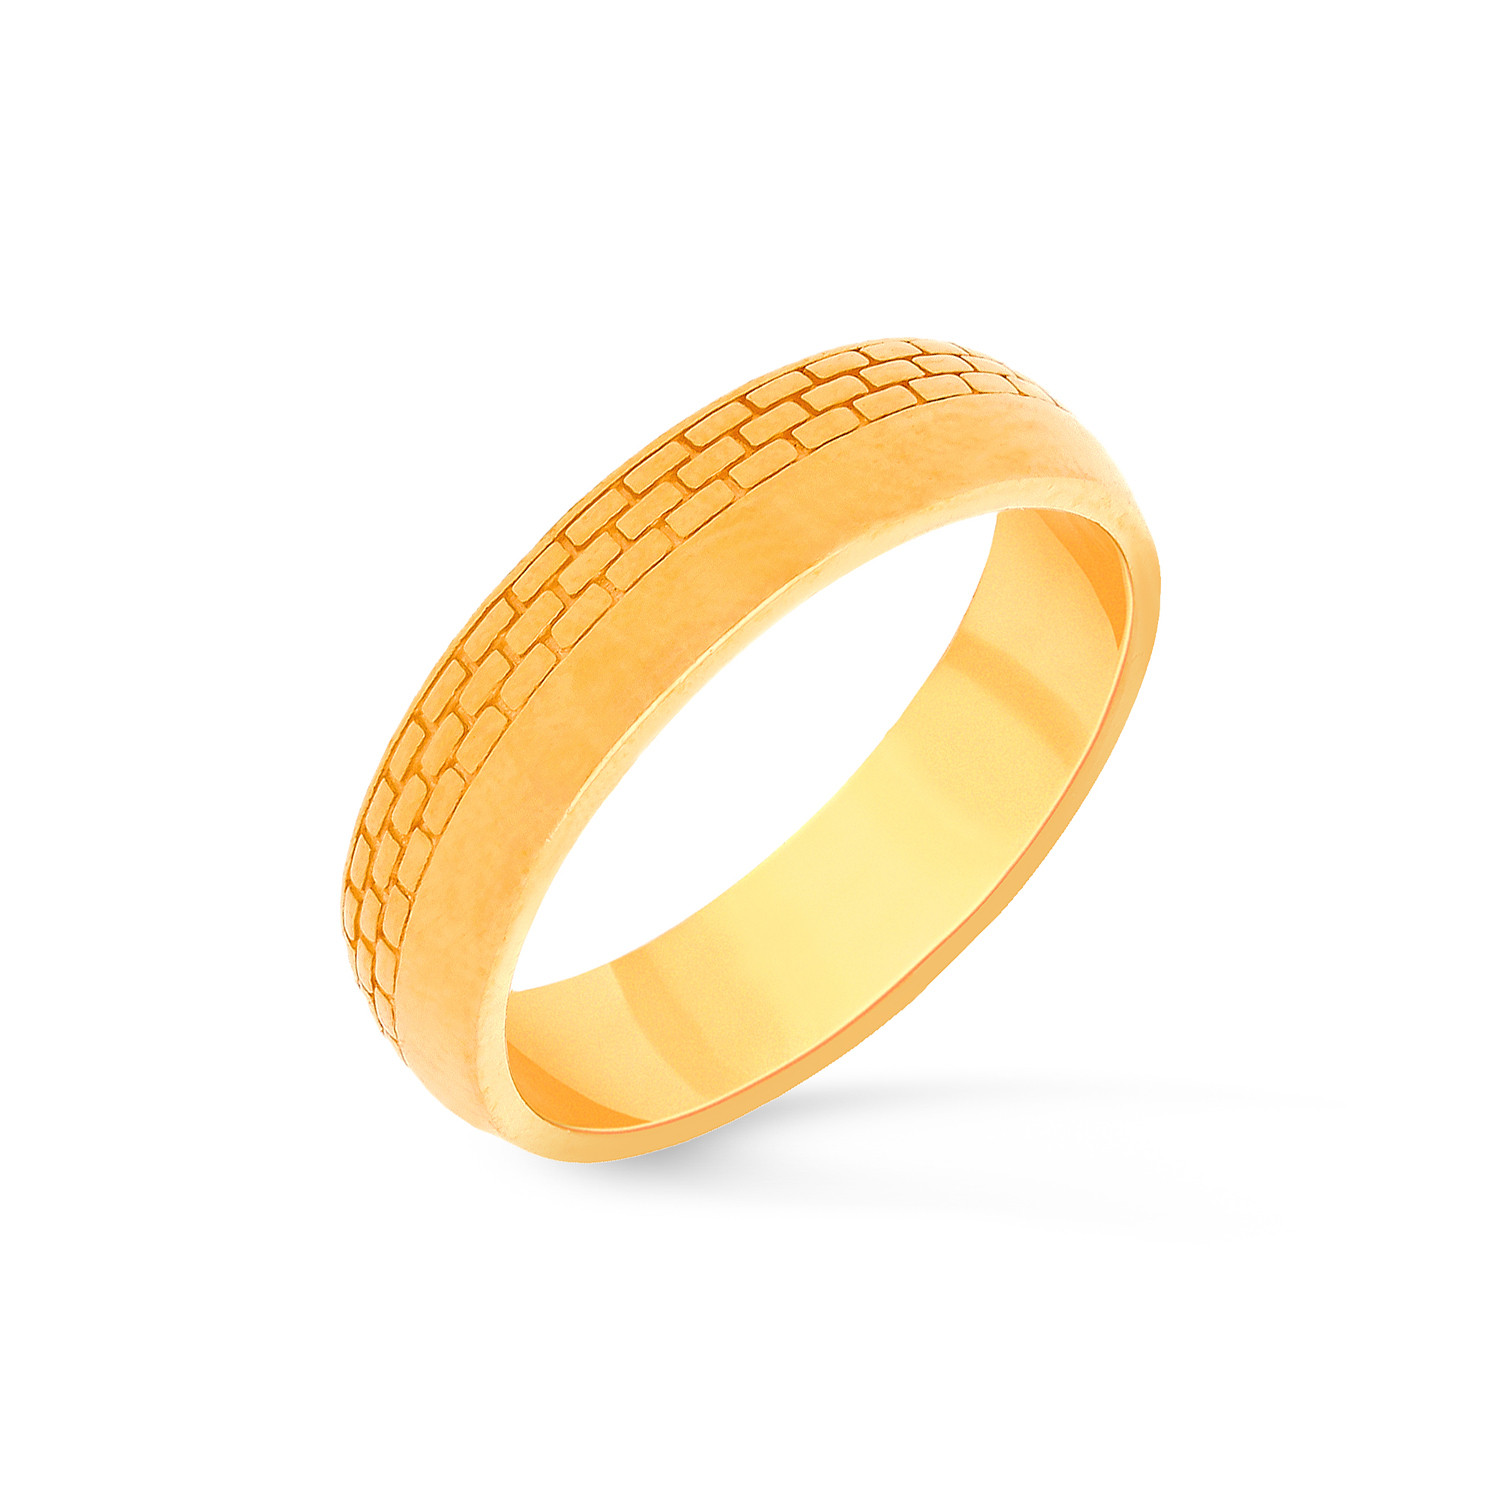 Malabar Gold & Diamonds Malabar Gold and Diamonds 22 KT (916) purity Yellow Gold  Malabar Gold Ring FRGEDZRURGW727 for Women : Amazon.in: Fashion